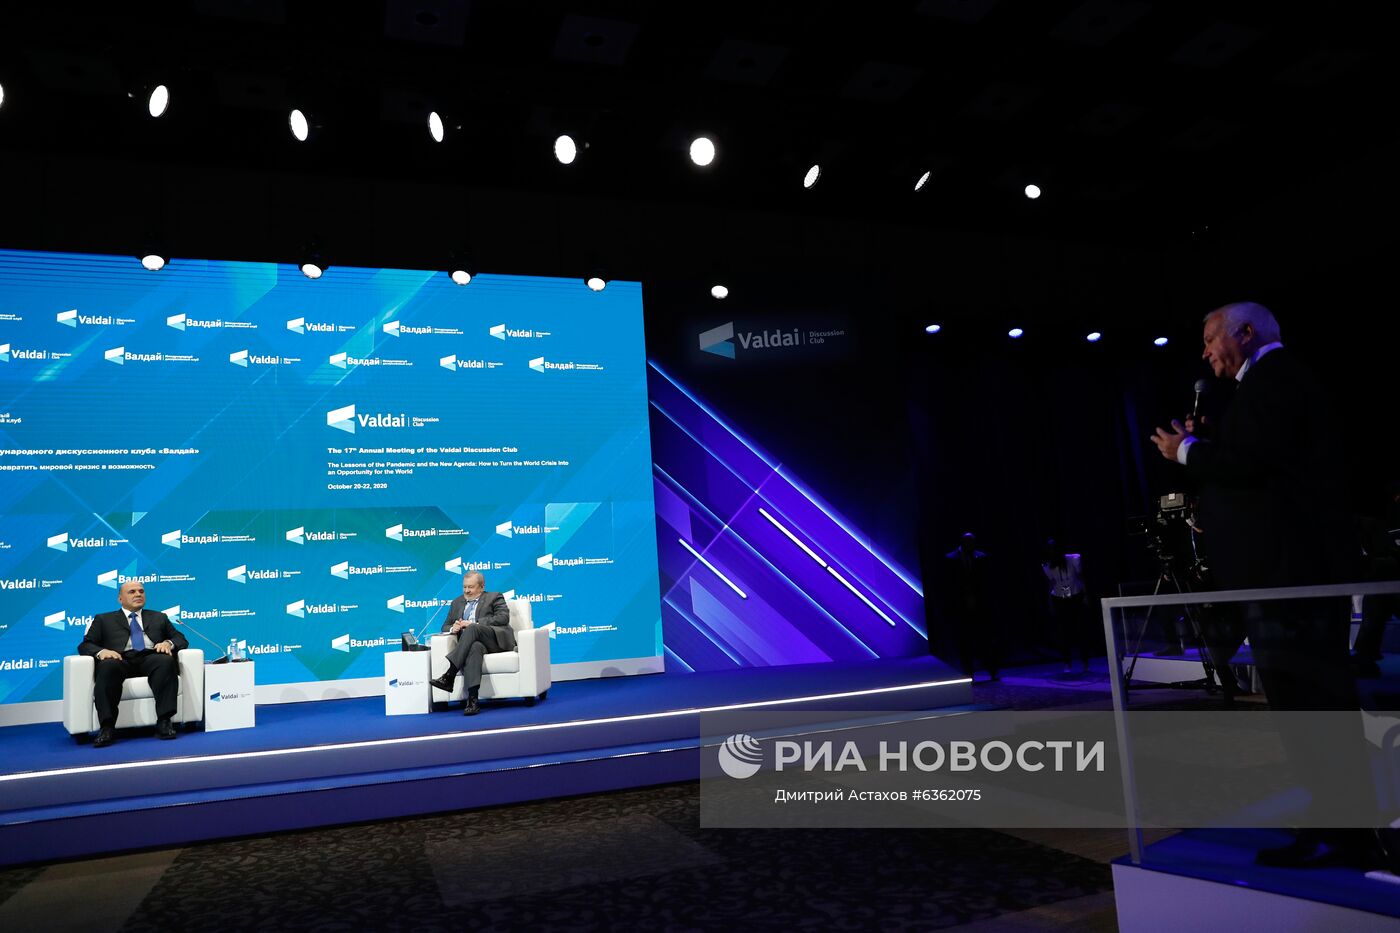 Премьер-министр РФ М. Мишустин принял участие в заседании международного дискуссионного клуба "Валдай".